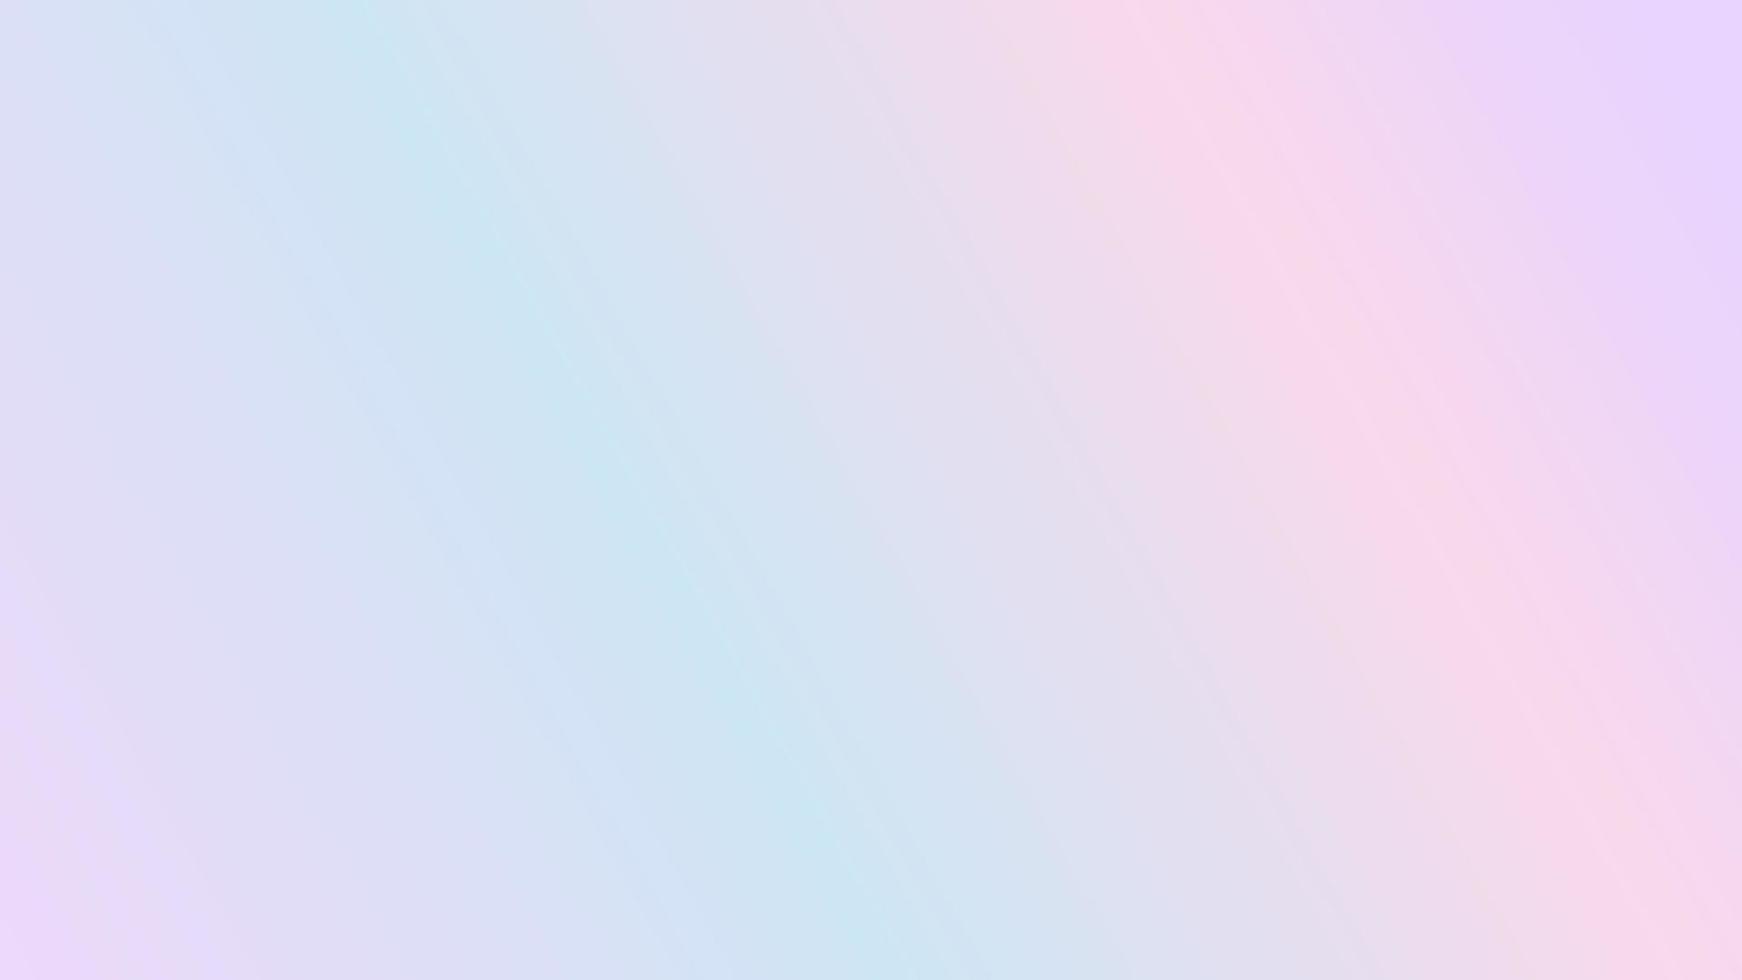 ilustração estética de papel de parede gradiente pastel roxo, azul e rosa, perfeita para pano de fundo, papel de parede, plano de fundo, banner vetor